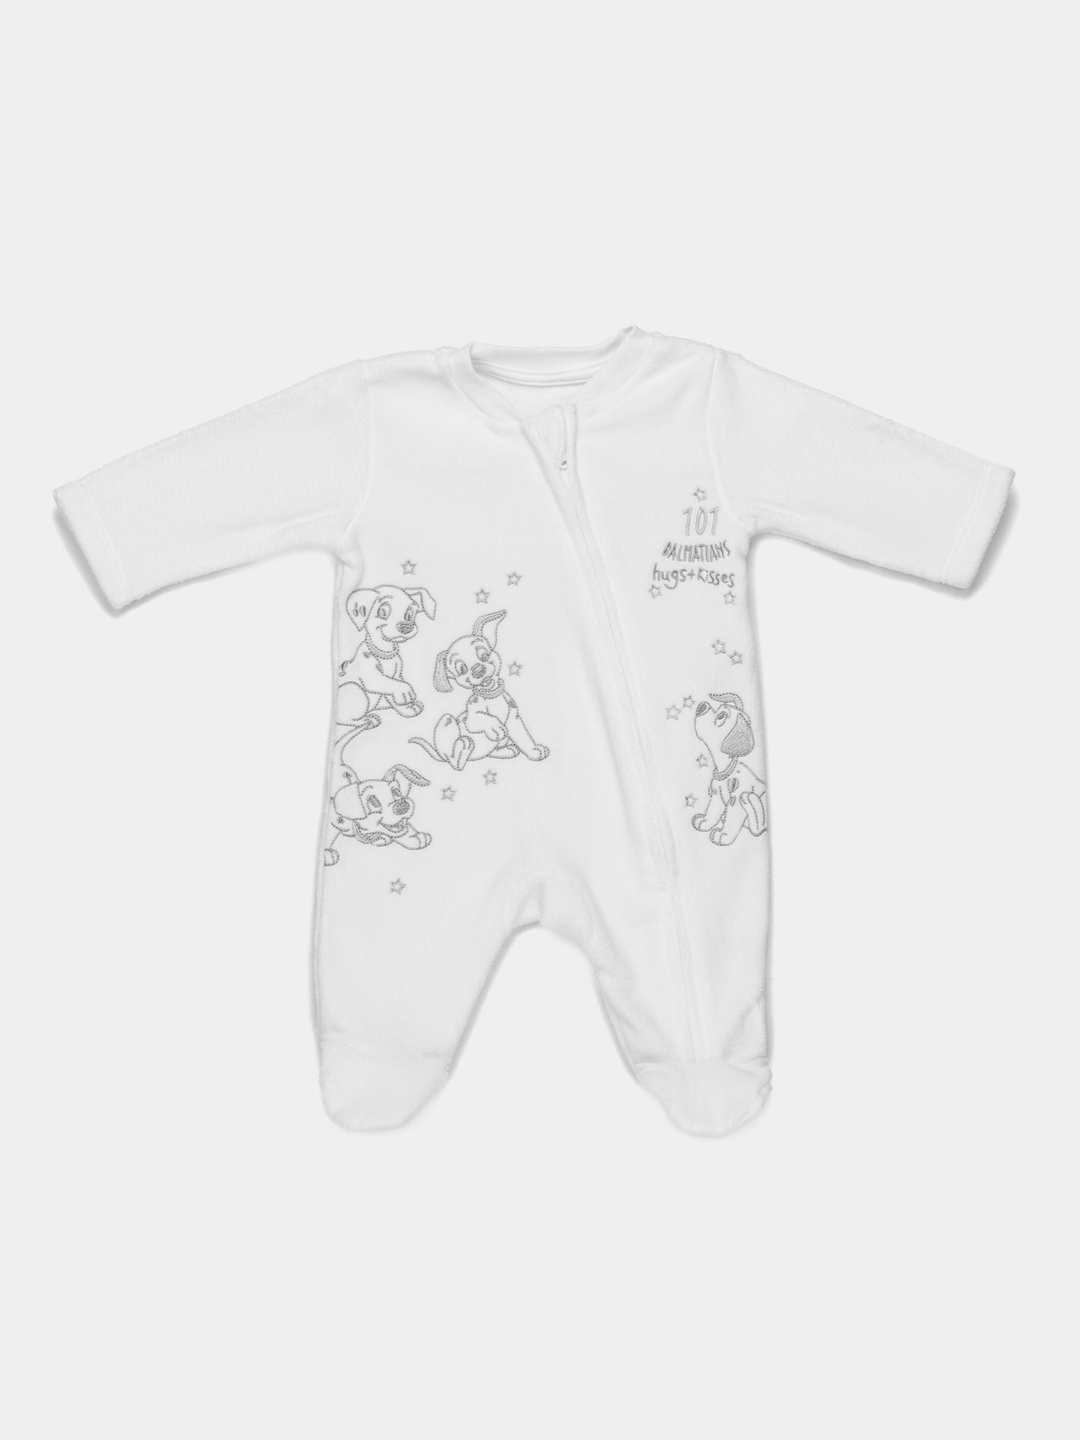 Одежда для новорожденных из флиса, кашемира и шерсти: цены и фото | интернет-магазин Олант